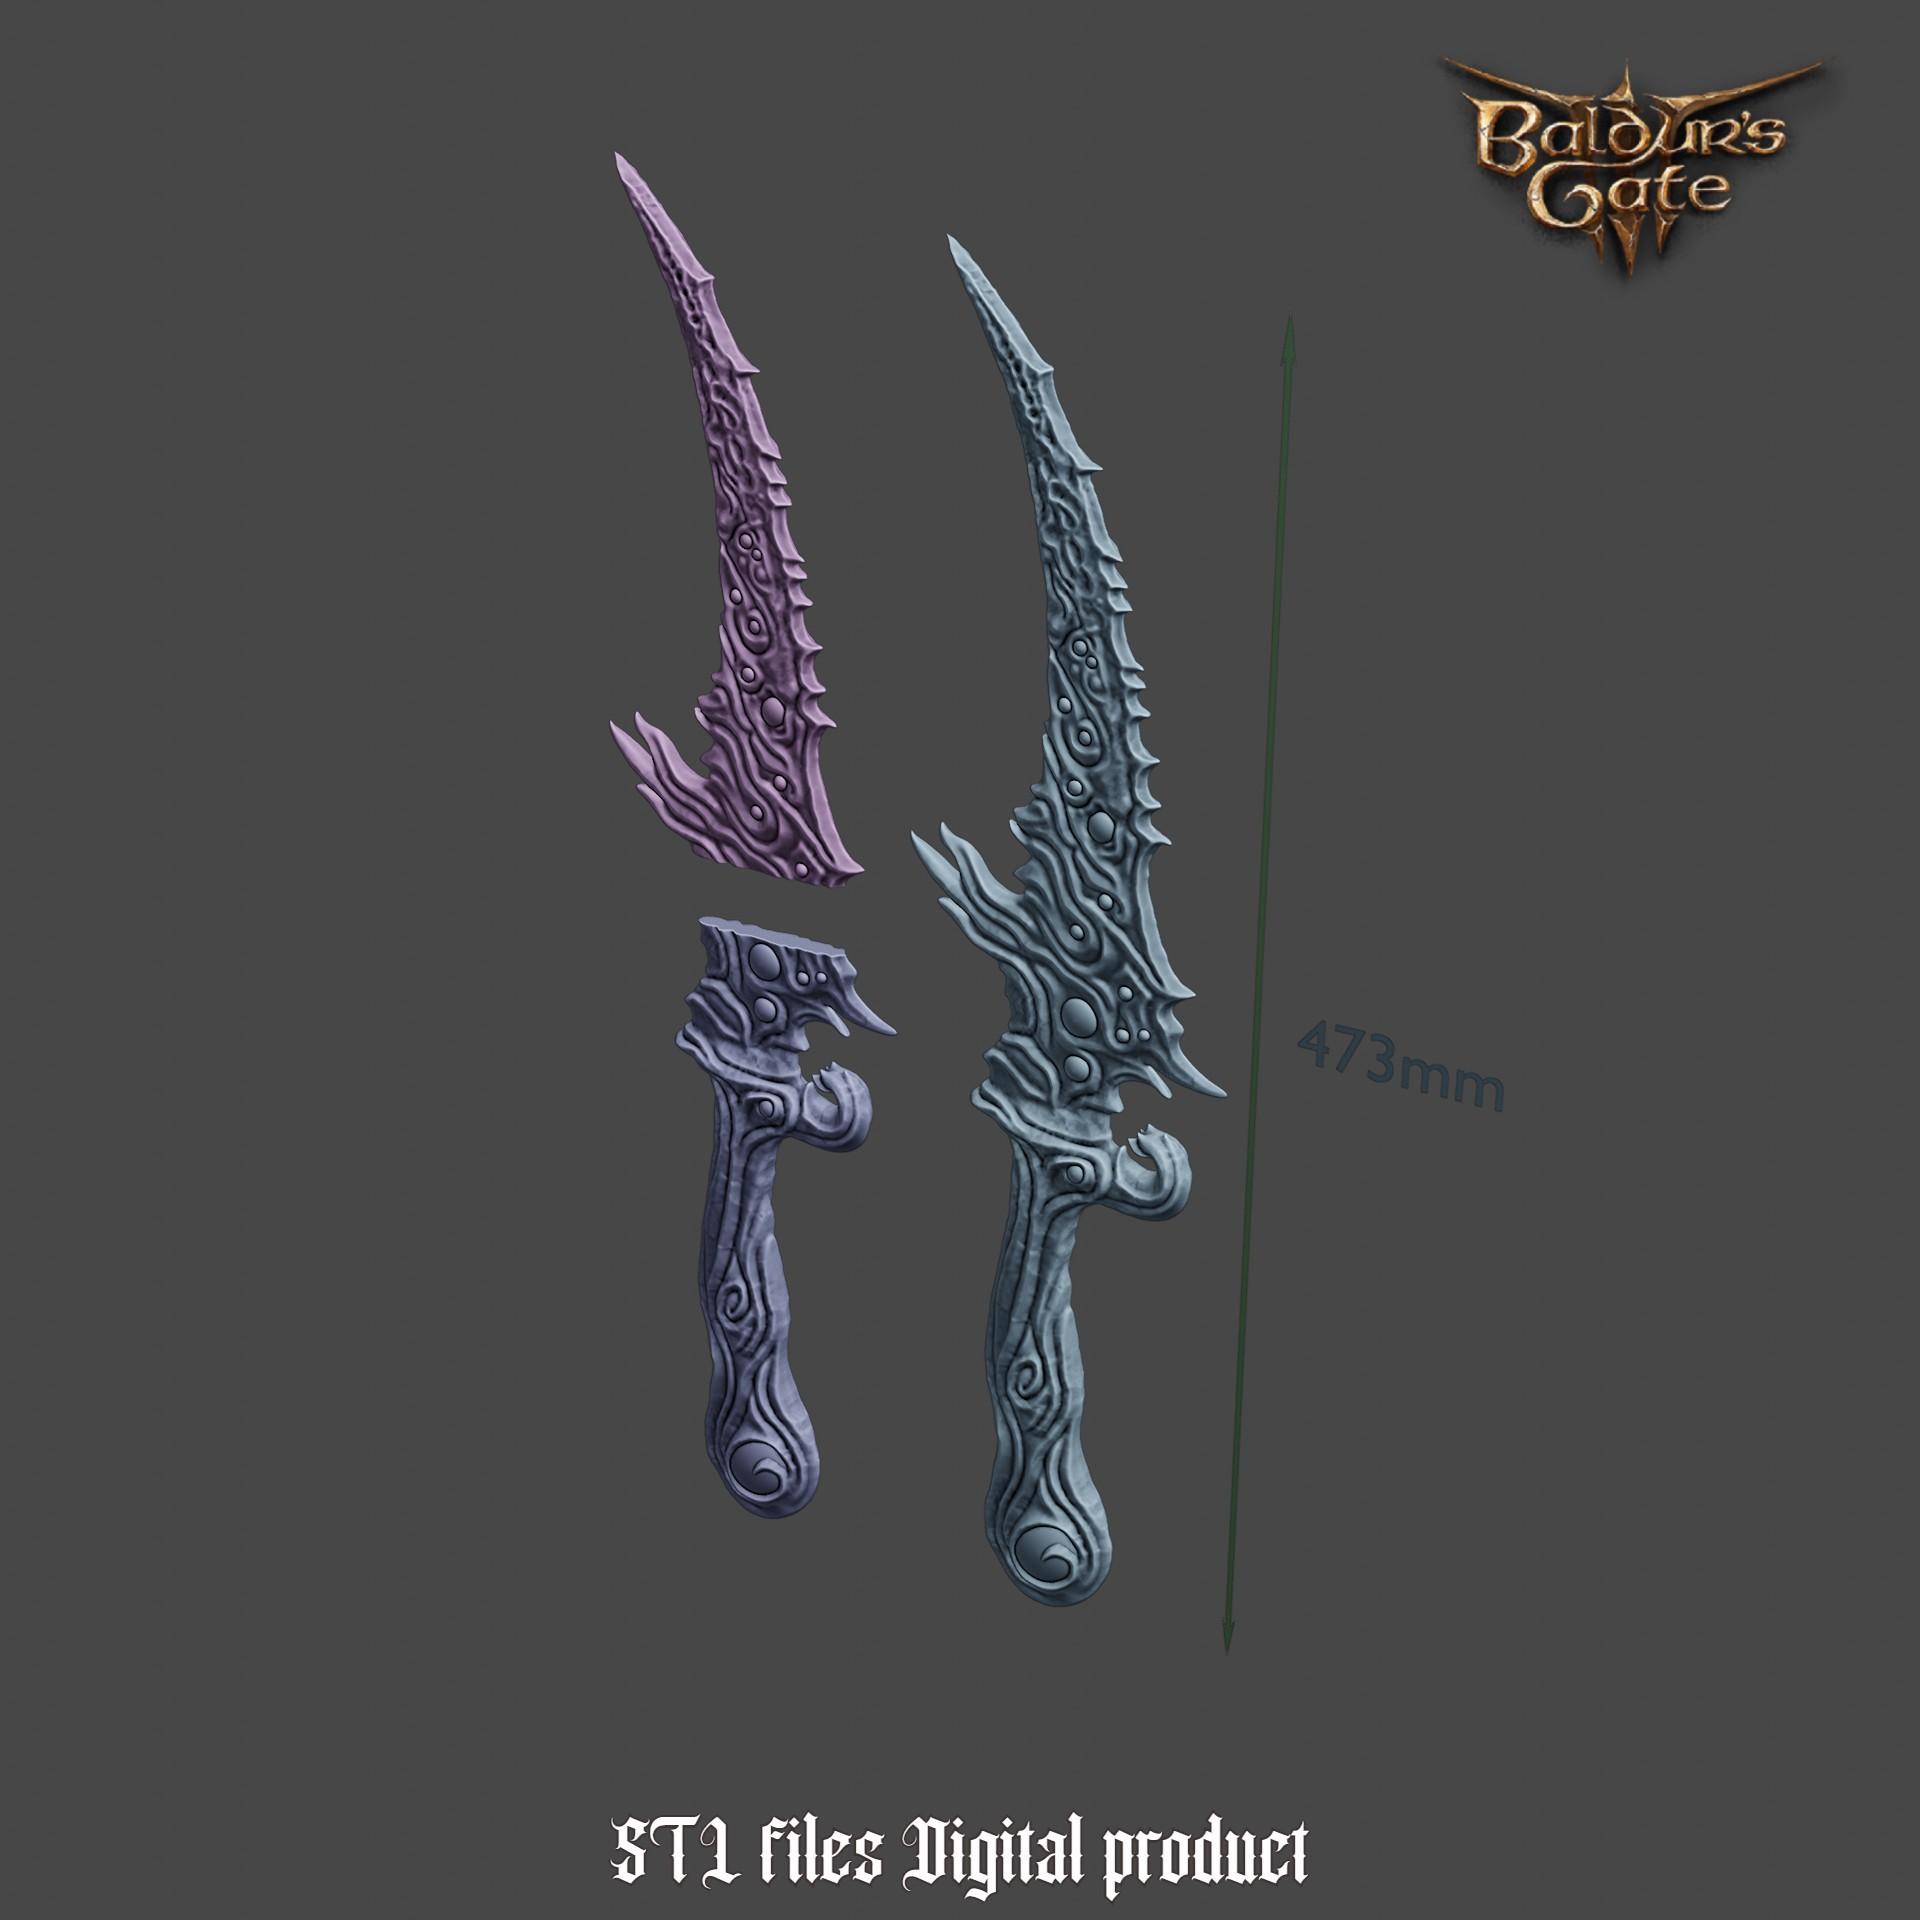 Fantasy Mastercrafted Susser Dagger from Baldurs Gate 3 3d model